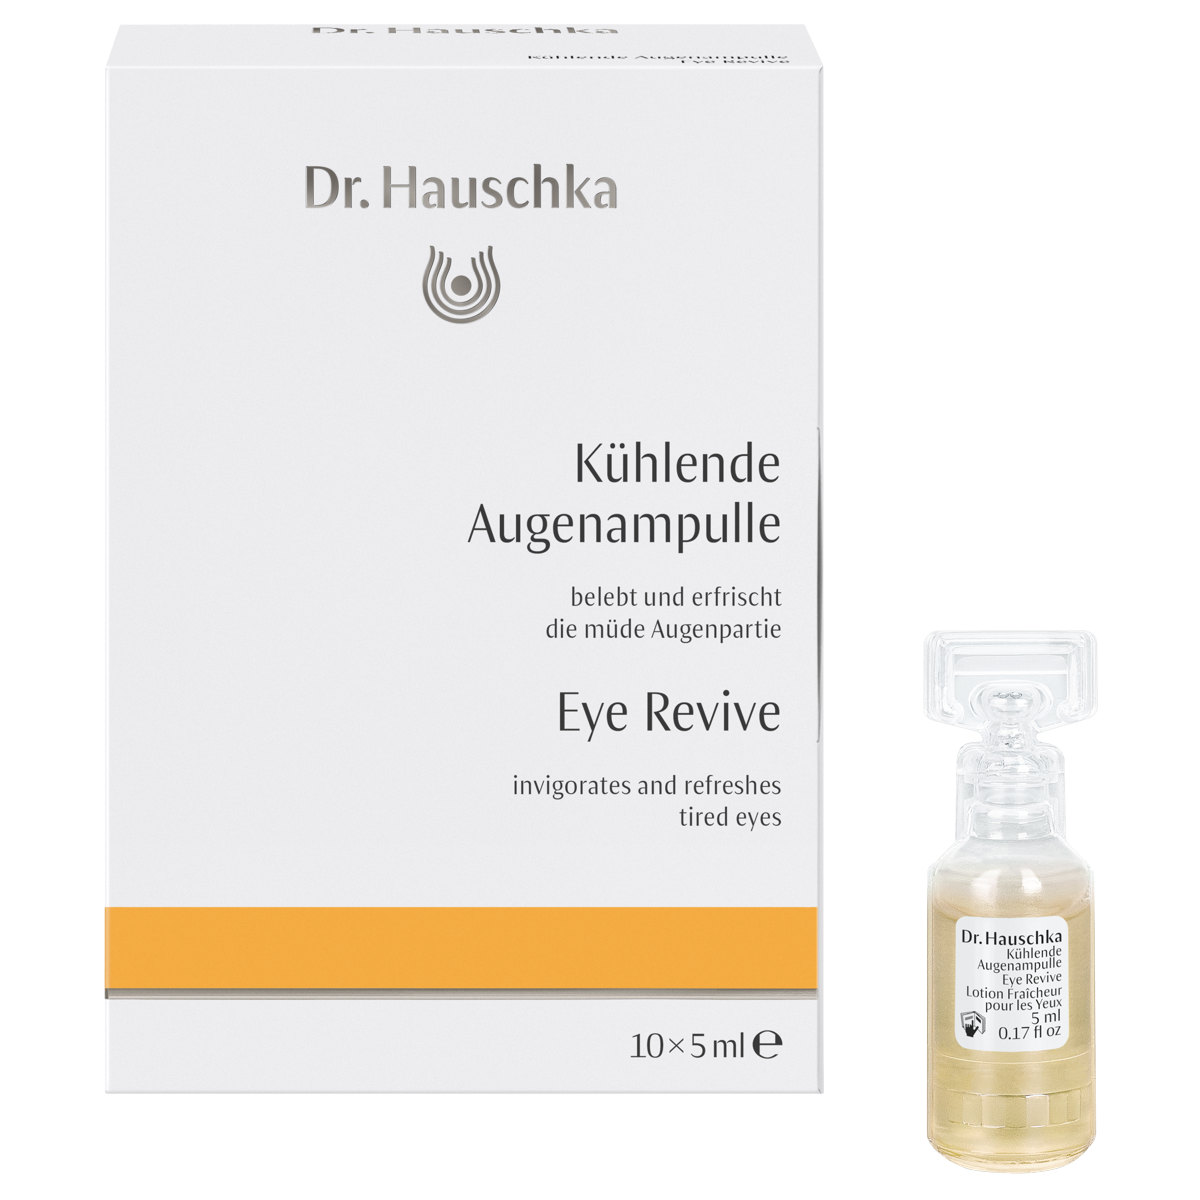 Dr_Hauschka_kuehlende_Augenampulle_online_kaufen